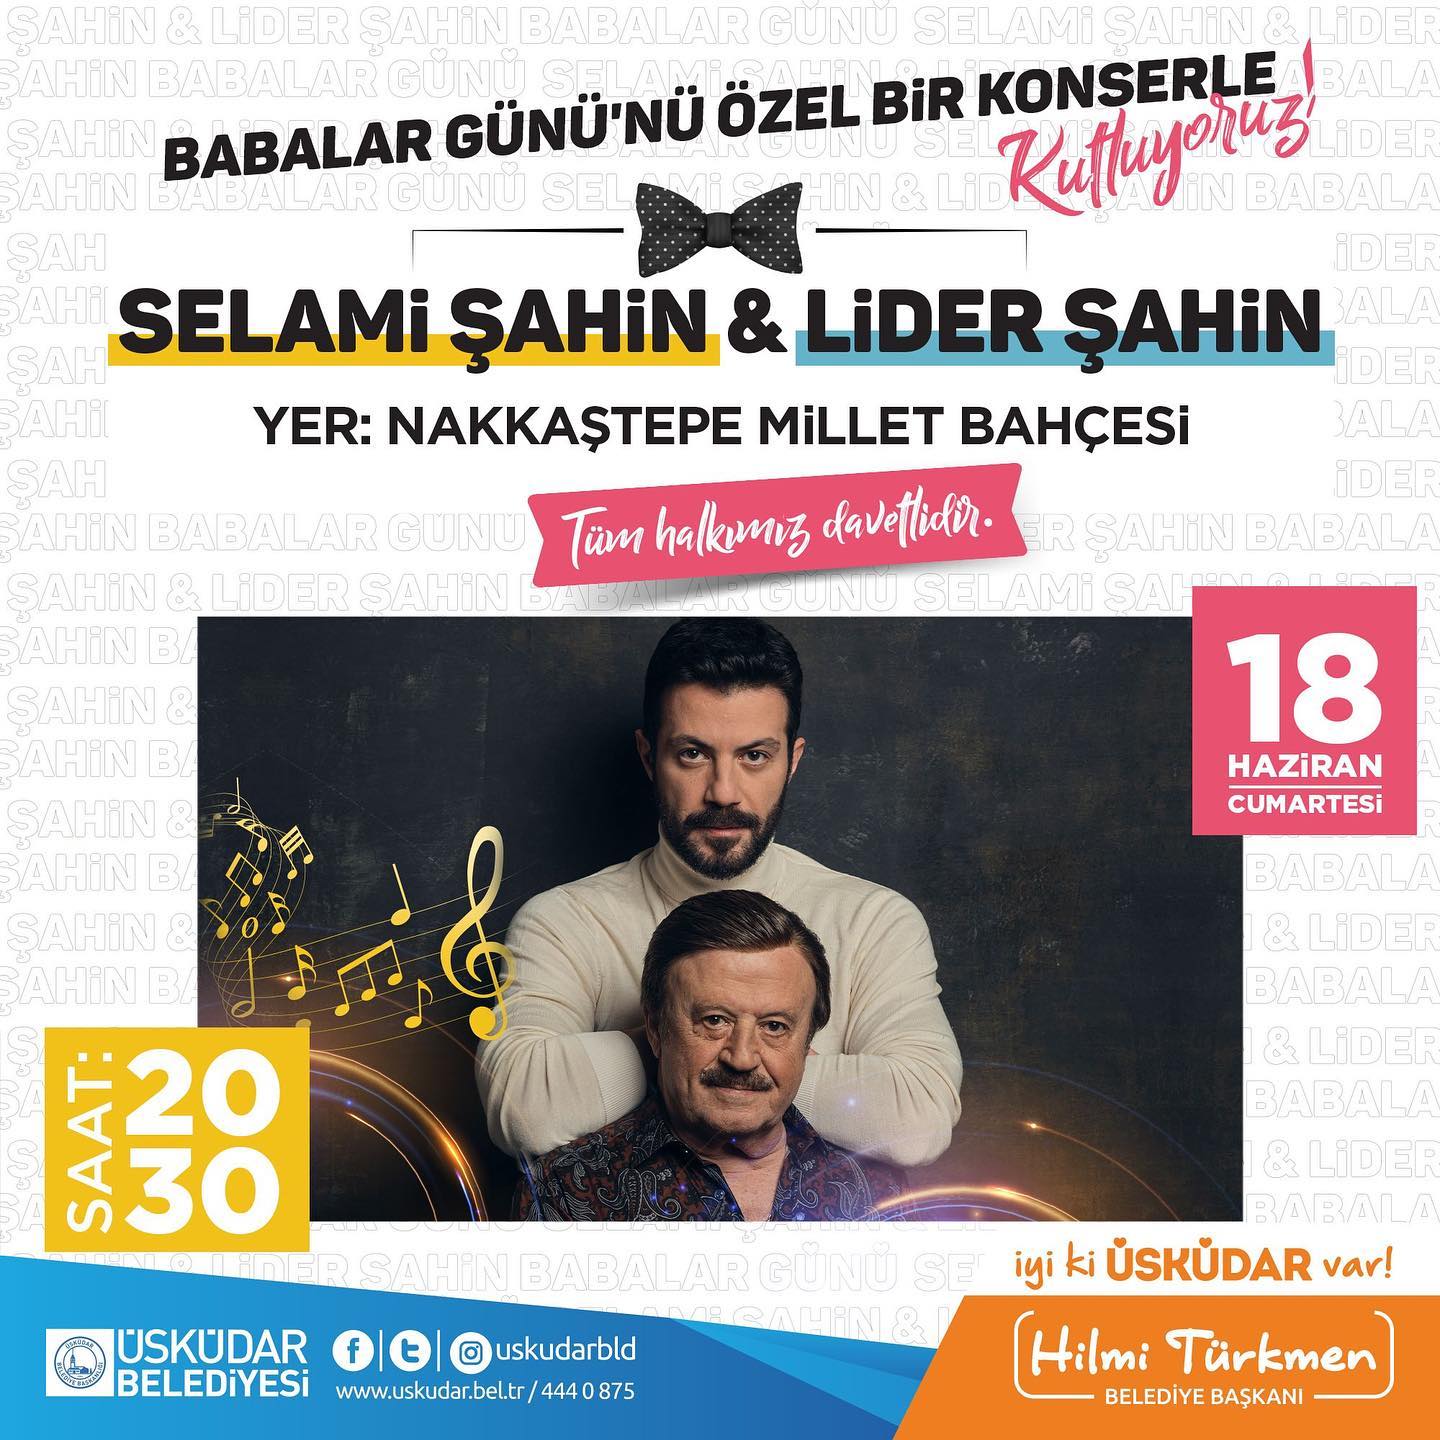 Selami Şahin & Lider Şahin Konseri Ücretsiz